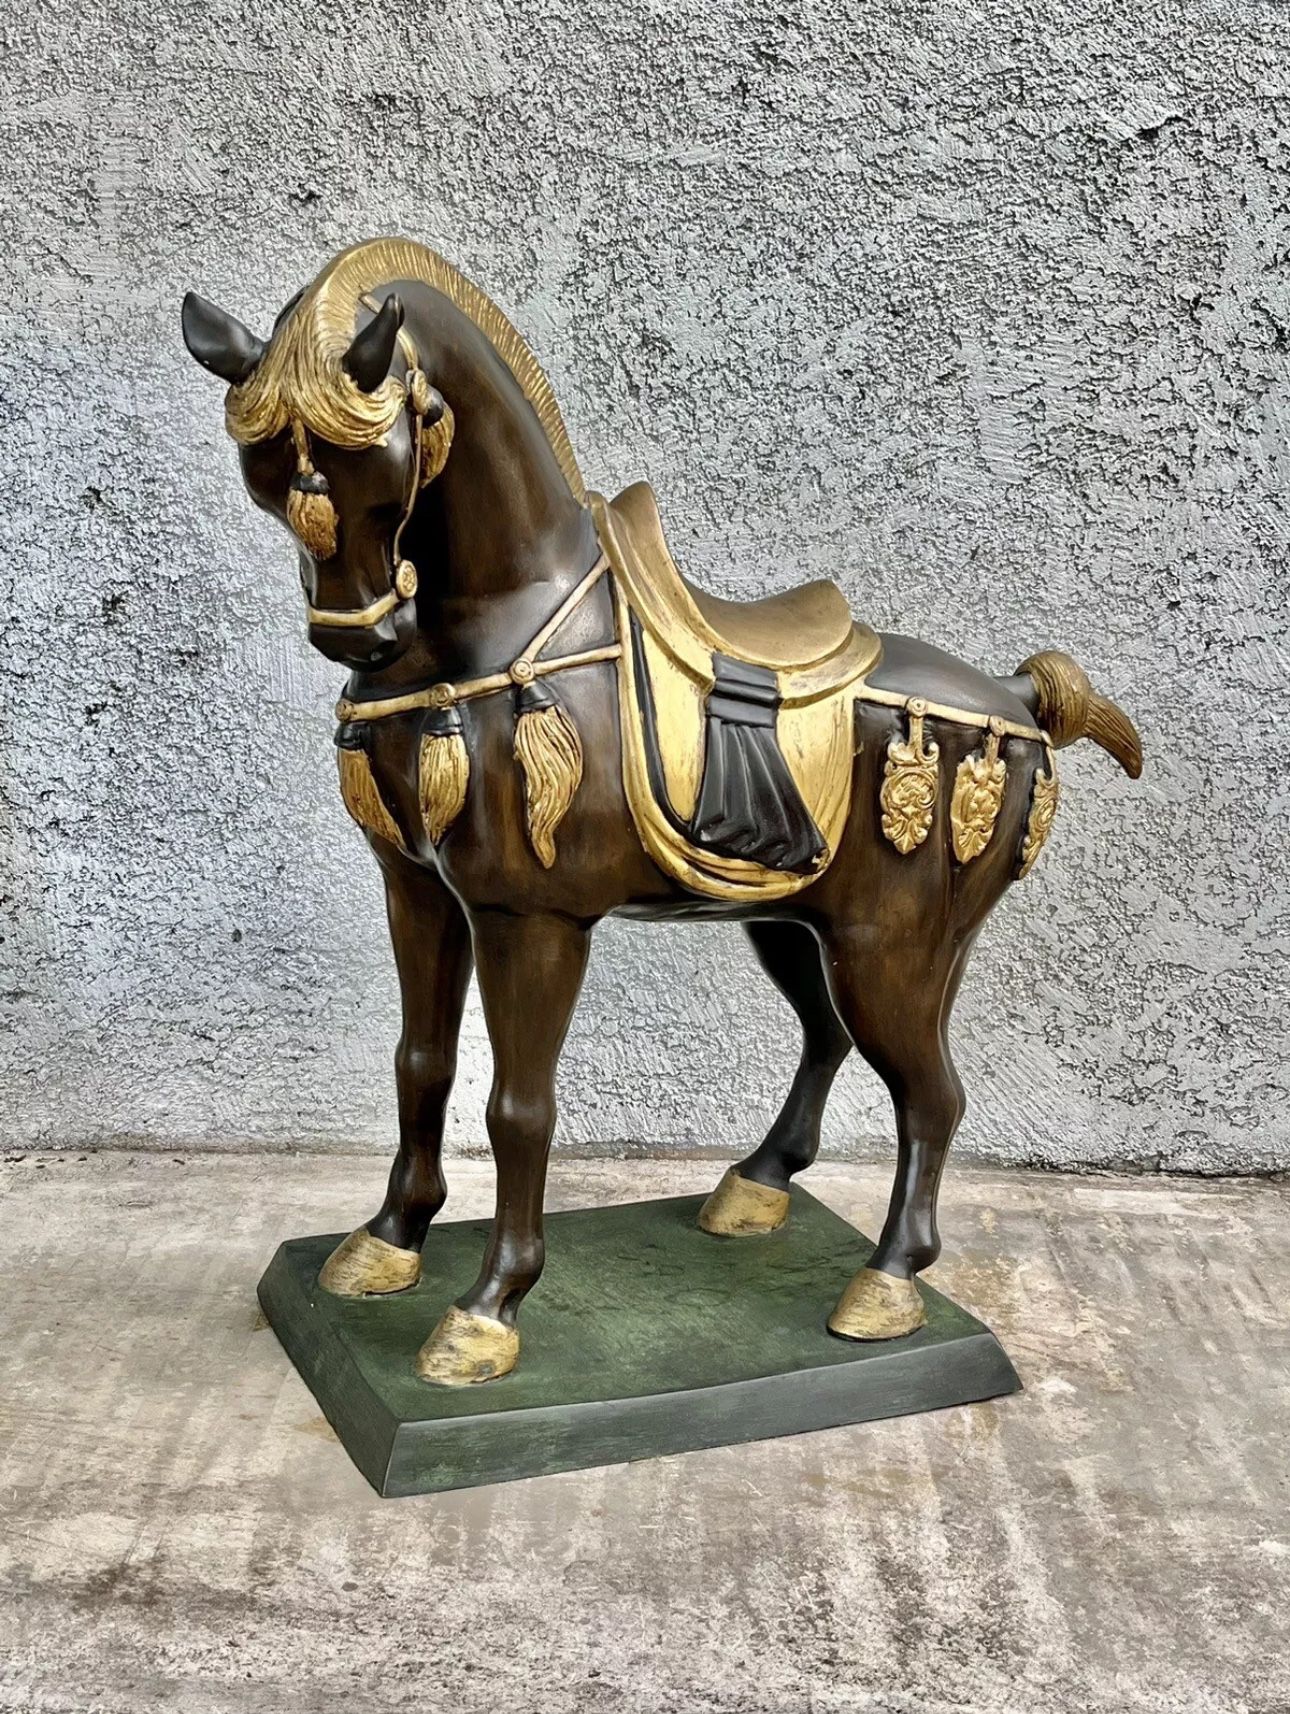 Vintage Large Bronze Statue Sculpture “Royal Horse” 28”x 28”